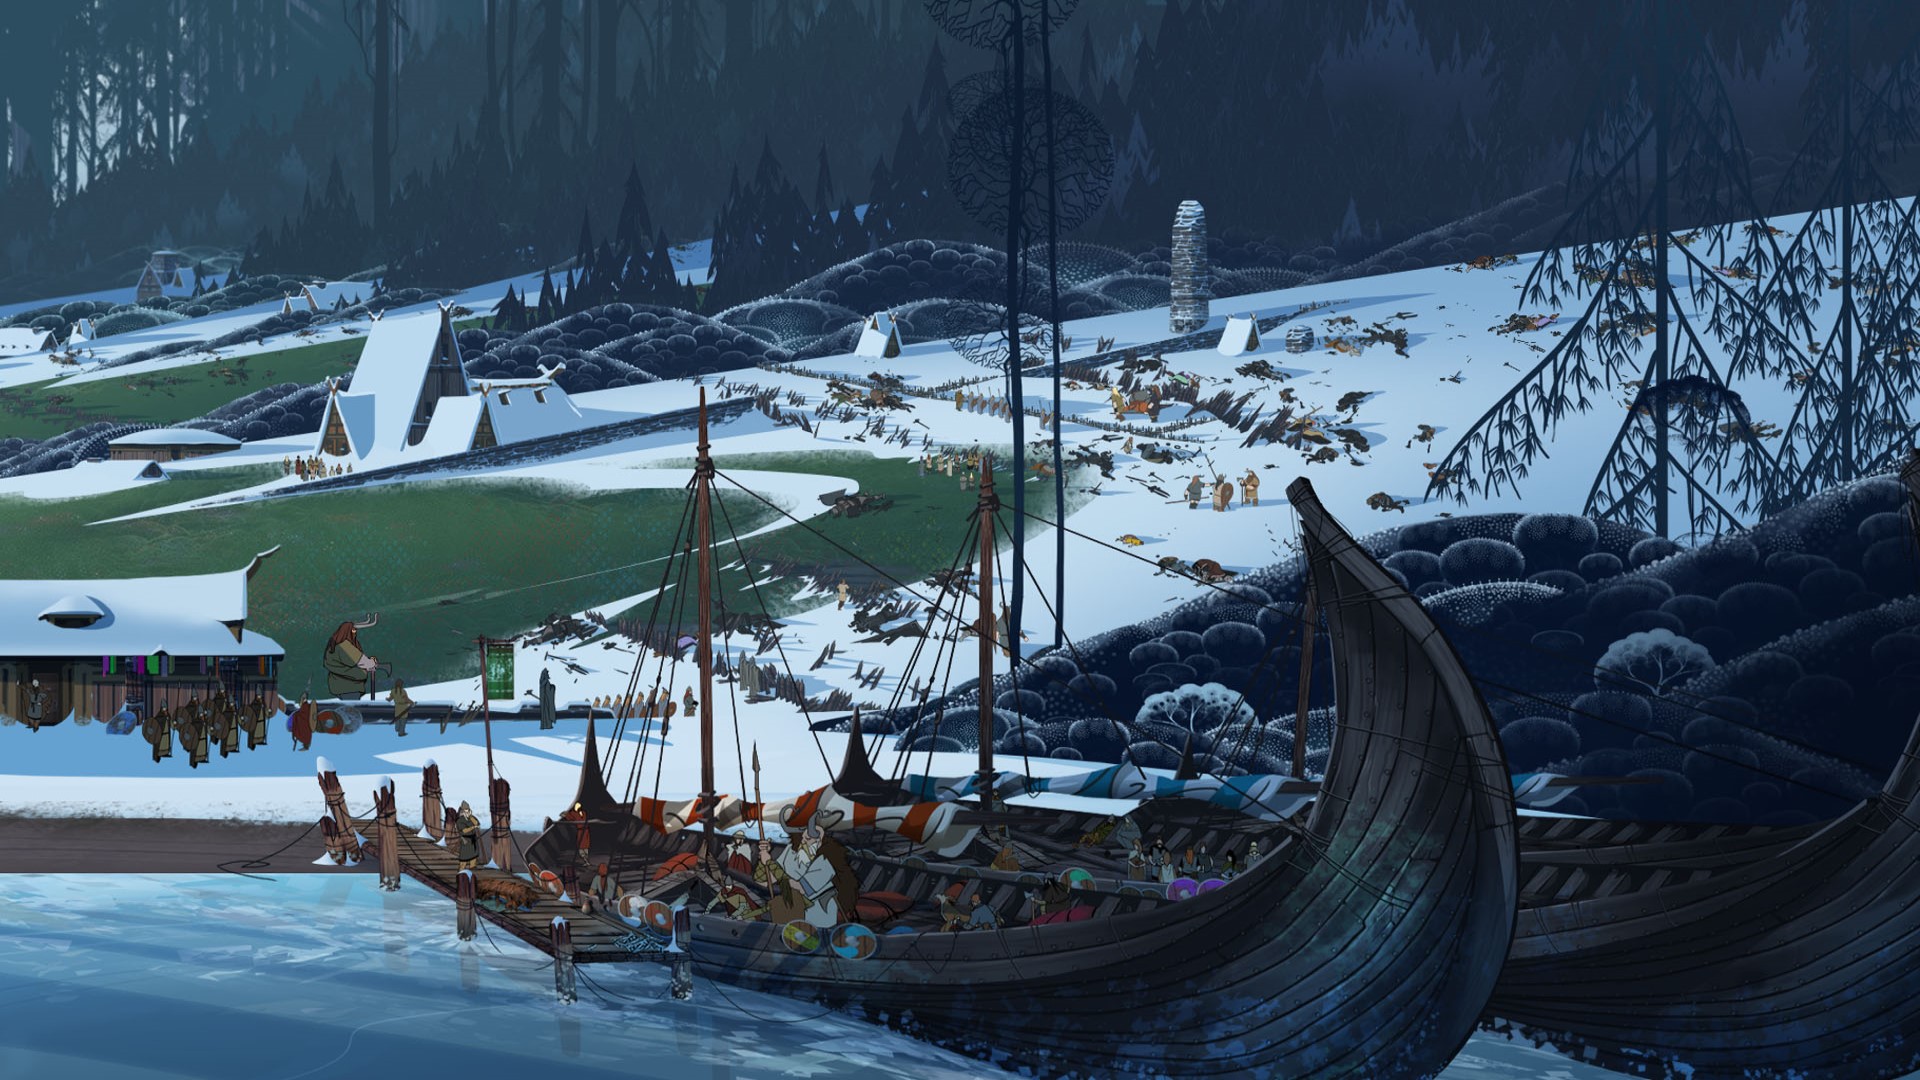 เกมกลยุทธ์มือถือที่ดีที่สุด: The Banner Saga ภาพแสดงเรือไวกิ้งใกล้กับดินแดนที่เต็มไปด้วยหิมะ